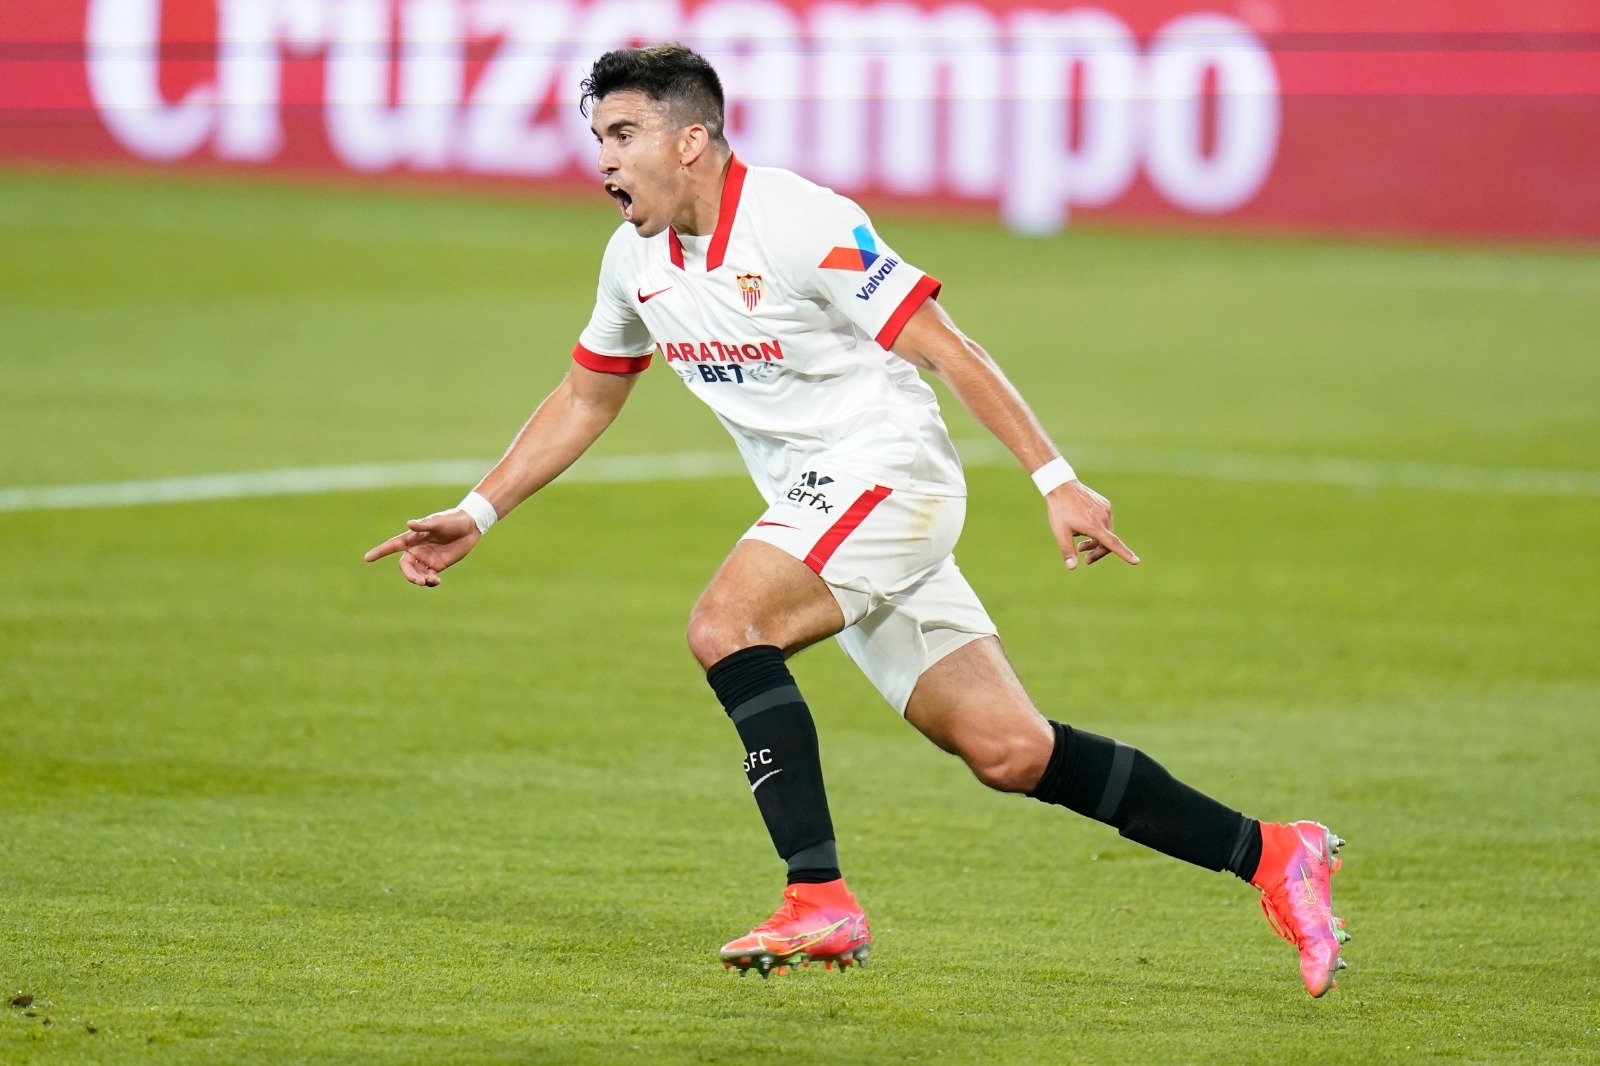 El zapalino Acuña será titular en el Sevilla, que juega ante el Lille.